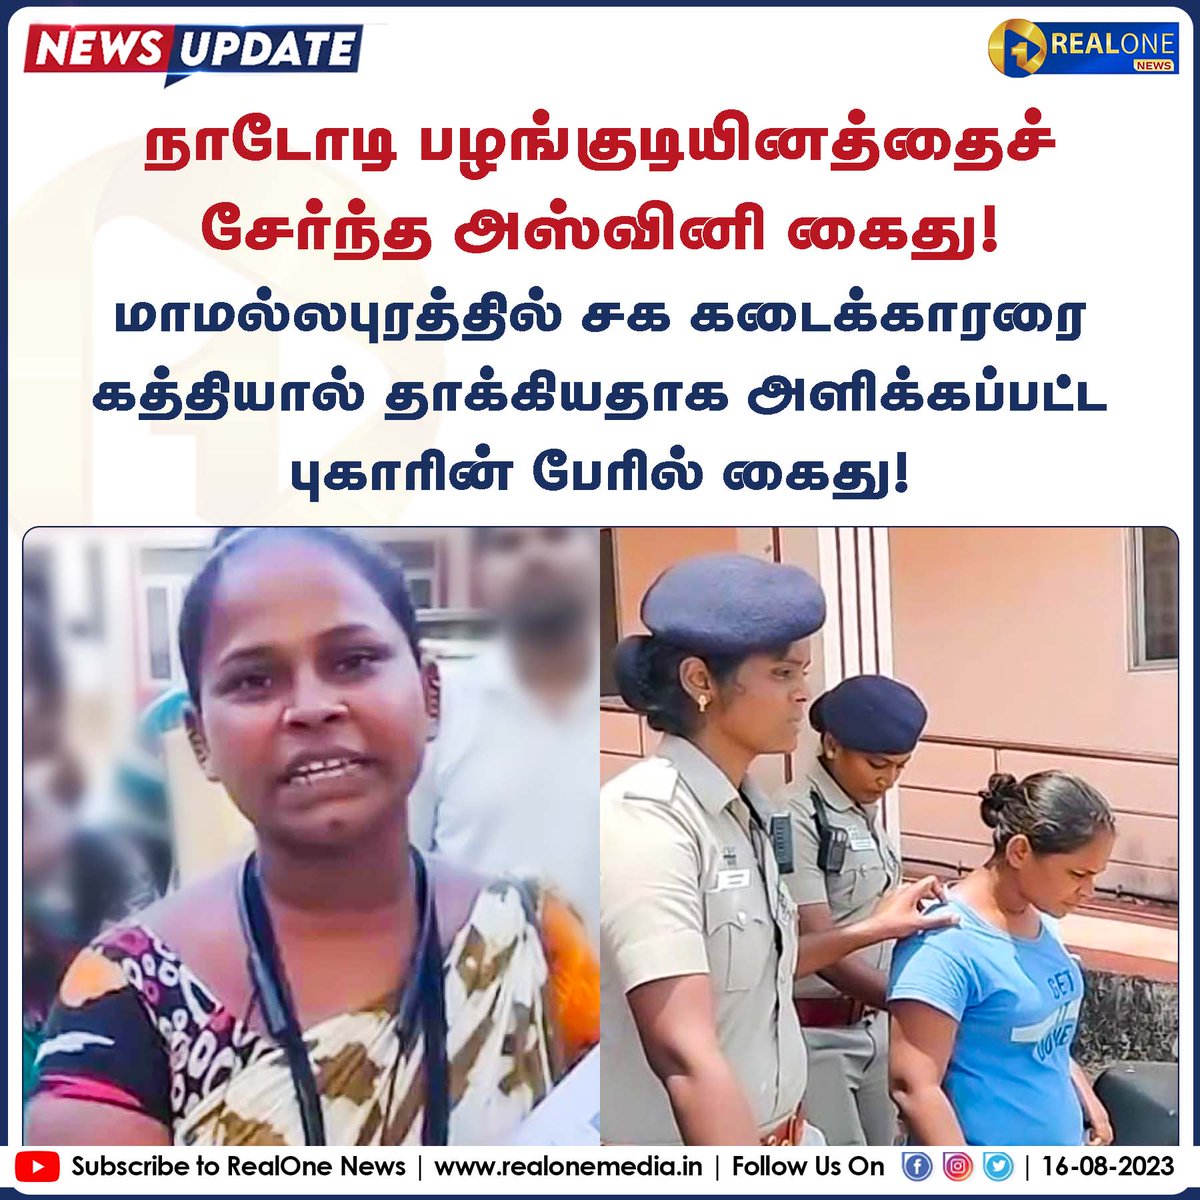 நாடோடி பழங்குடியினத்தைச் சேர்ந்த அஸ்வினி கைது! மாமல்லபுரத்தில் சக கடைக்காரரை கத்தியால் தாக்கியதாக அளிக்கப்பட்ட புகாரின் பேரில் கைது! #Ashwini #Mamallapuram #Arrest #Narikuravar #Tribal #Chennai #realonemedia #realonenews